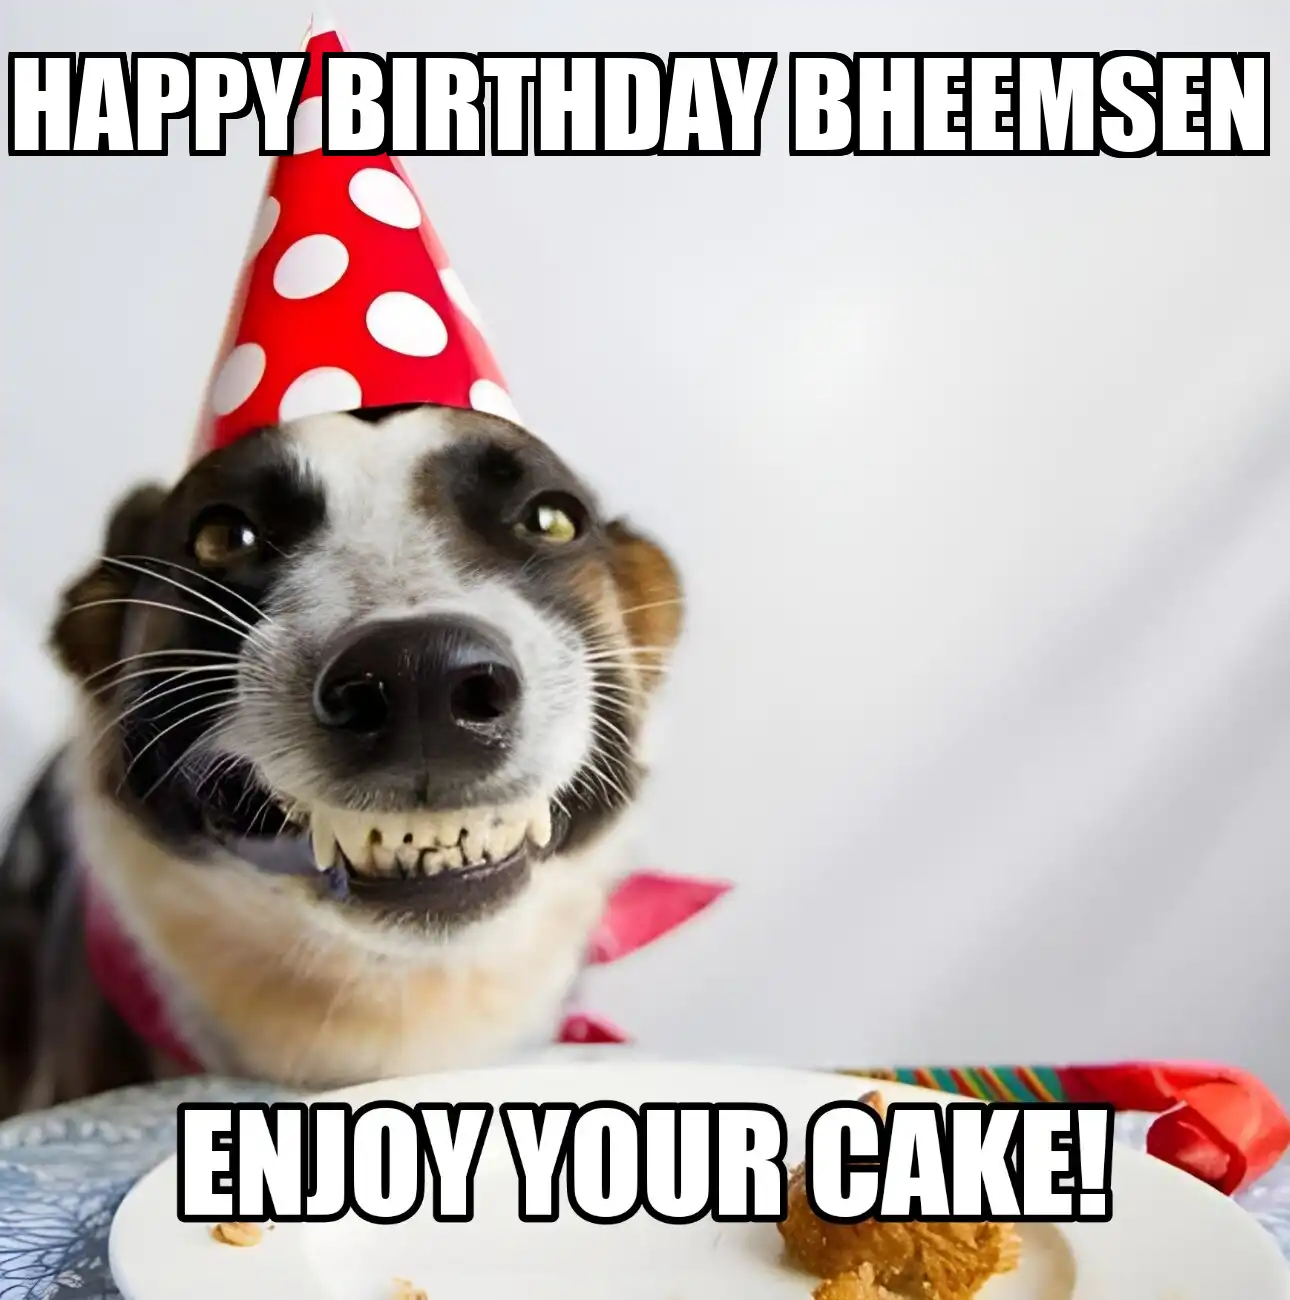 Happy Birthday Bheemsen Enjoy Your Cake Dog Meme